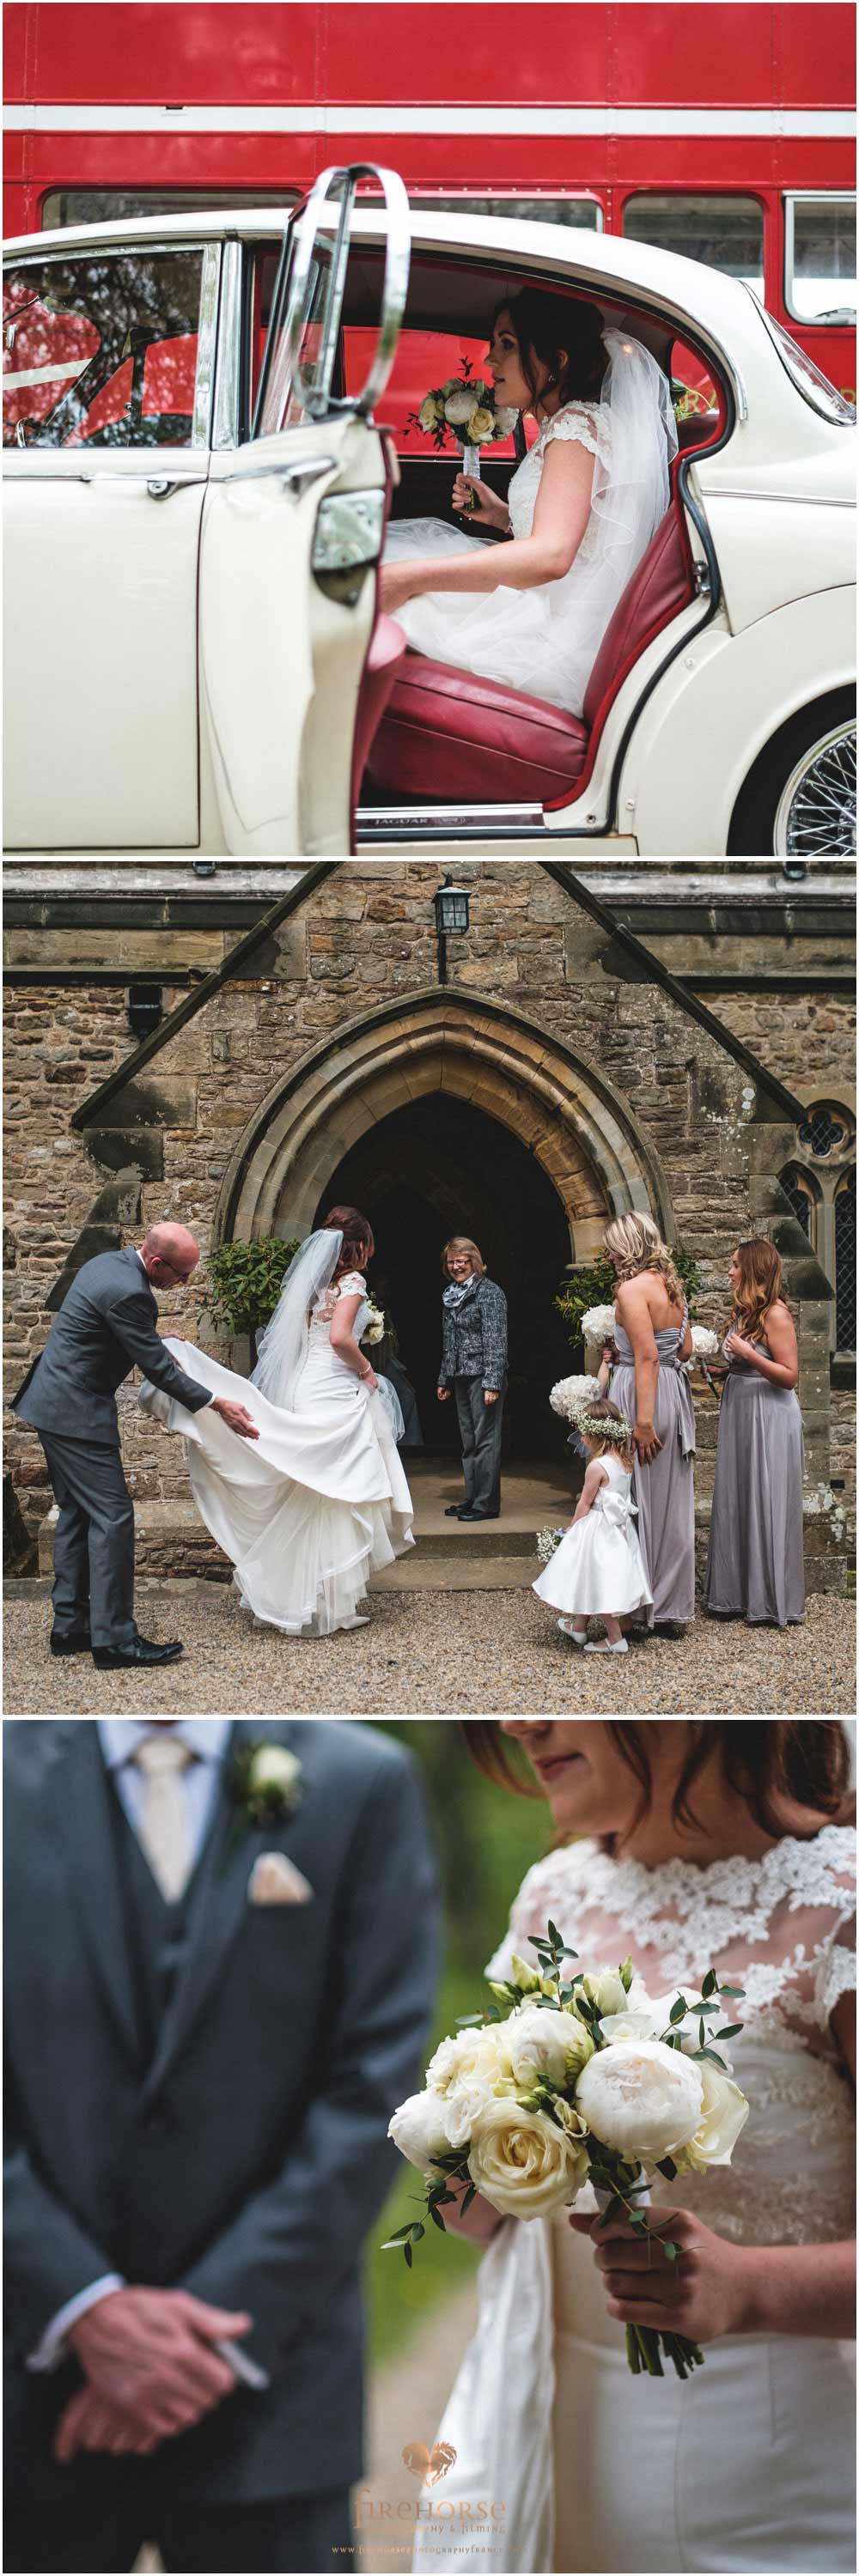 Wedding-Photographers-Yorkshire-6